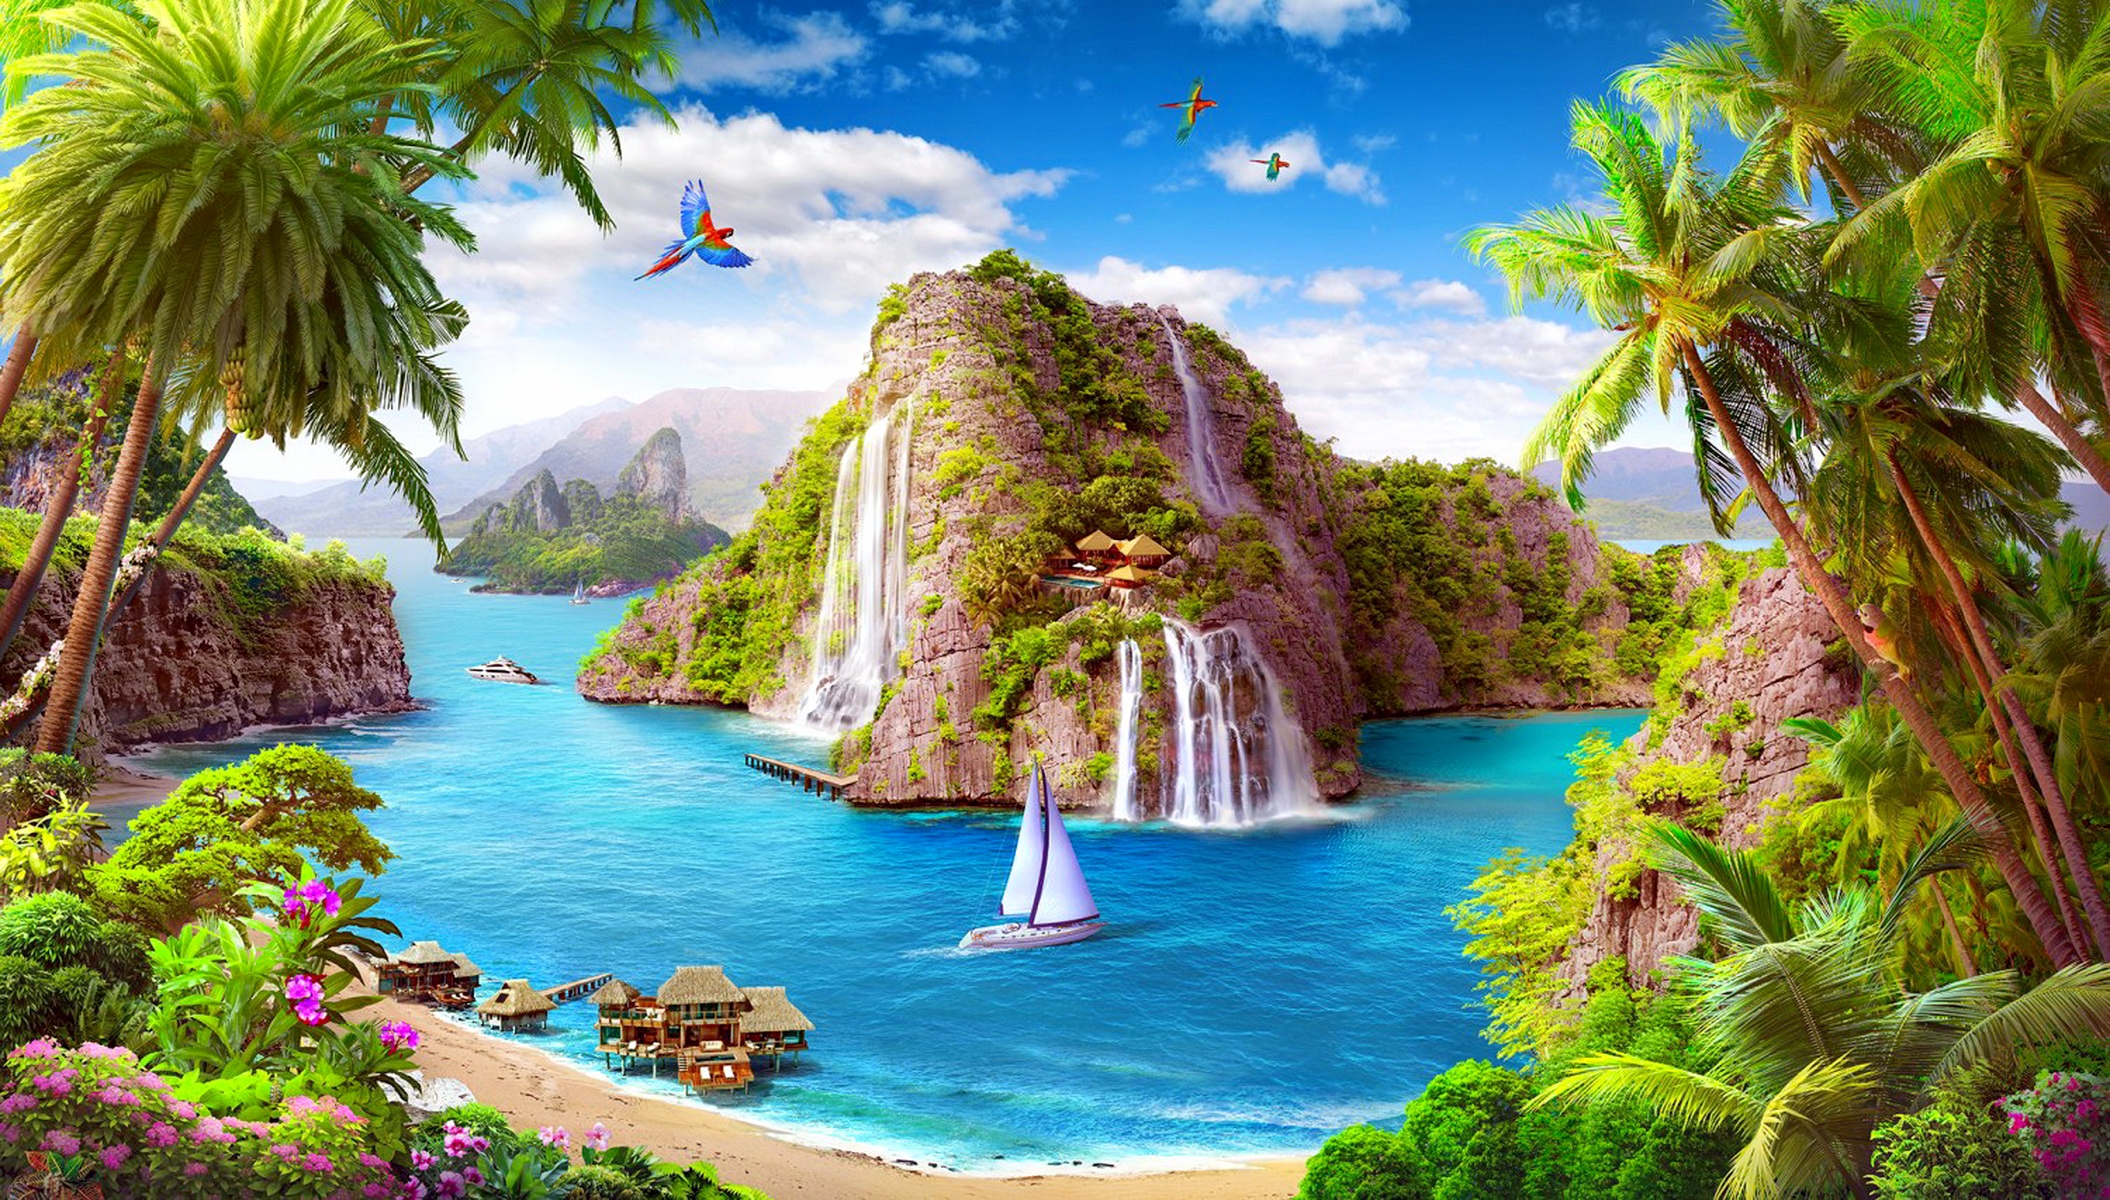 fond d'écran paradisiaque,paysage naturel,la nature,décor théâtral,ressources en eau,caraïbes